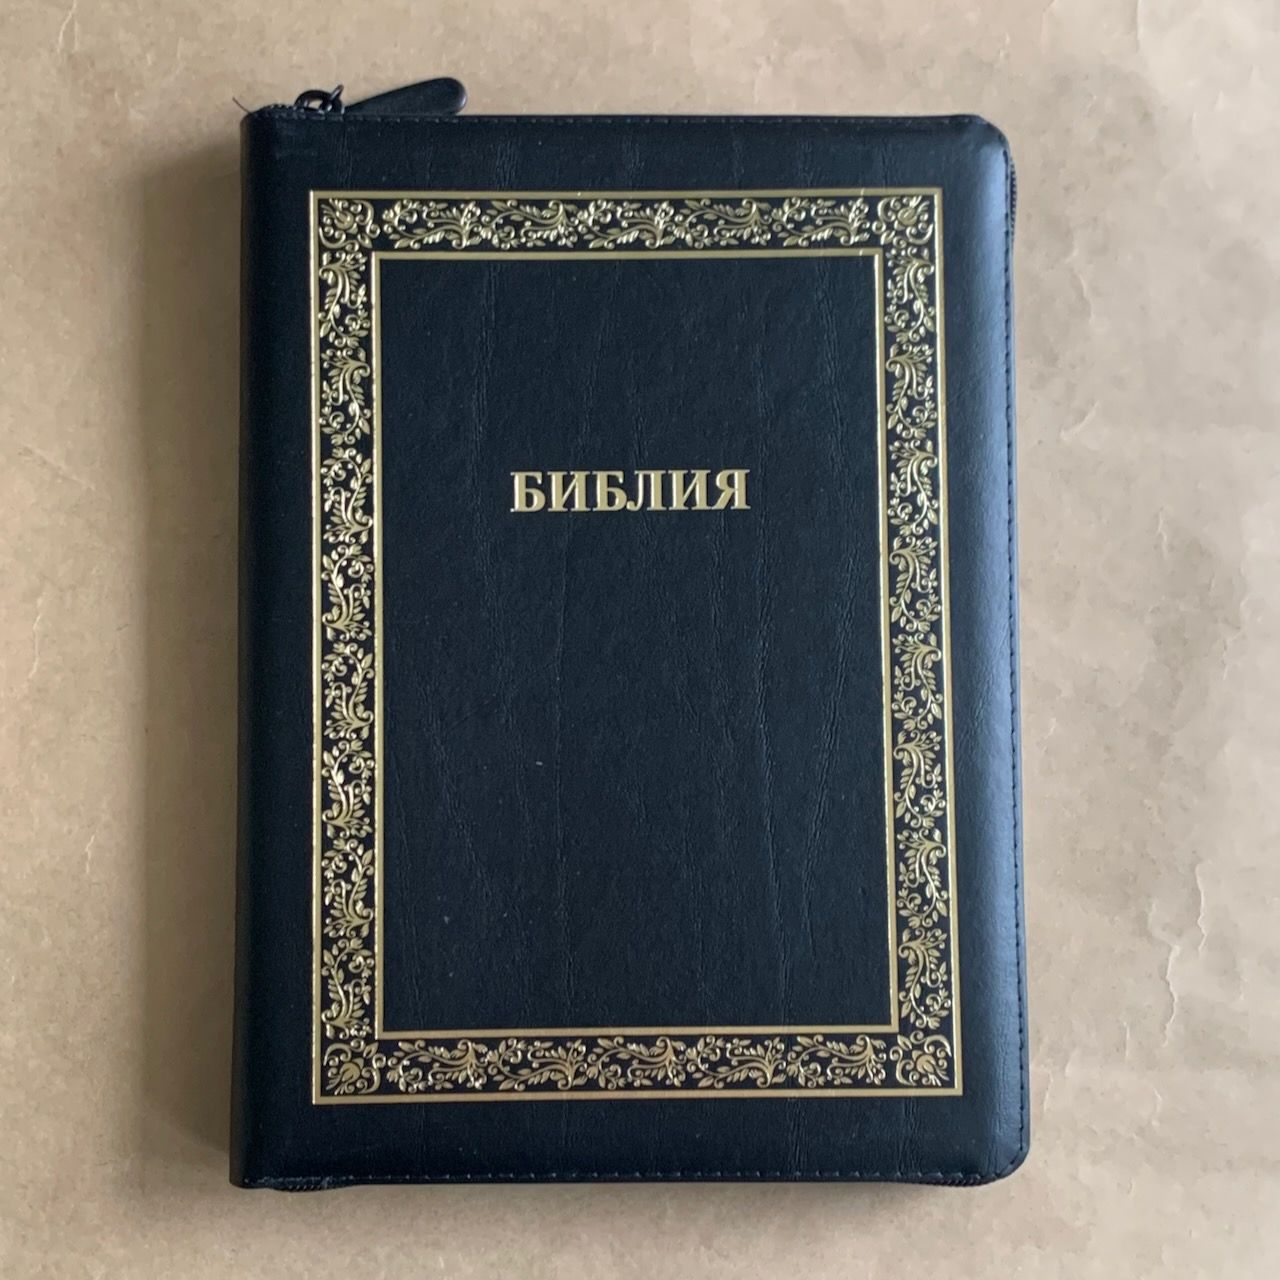 Библия 076z код B9, дизайн "золотая рамка растительный орнамент", кожаный переплет на молнии, цвет черный с прожилками, размер 180x243 мм